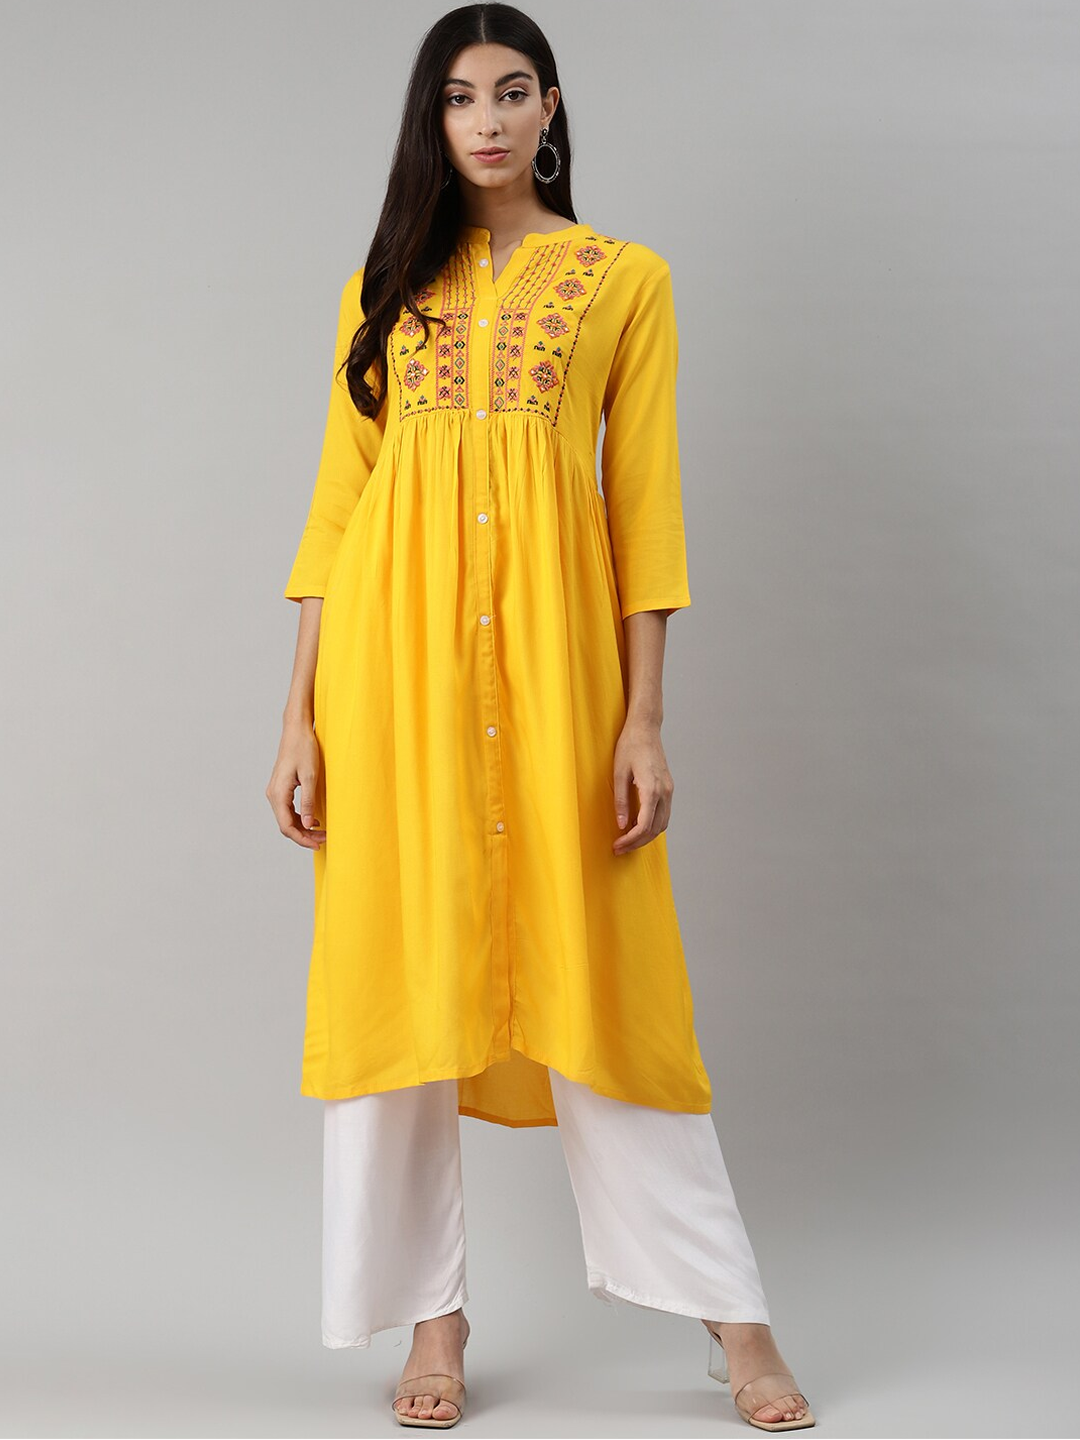 rayon-a-line-yellow-embroidered-kurta-ask-211